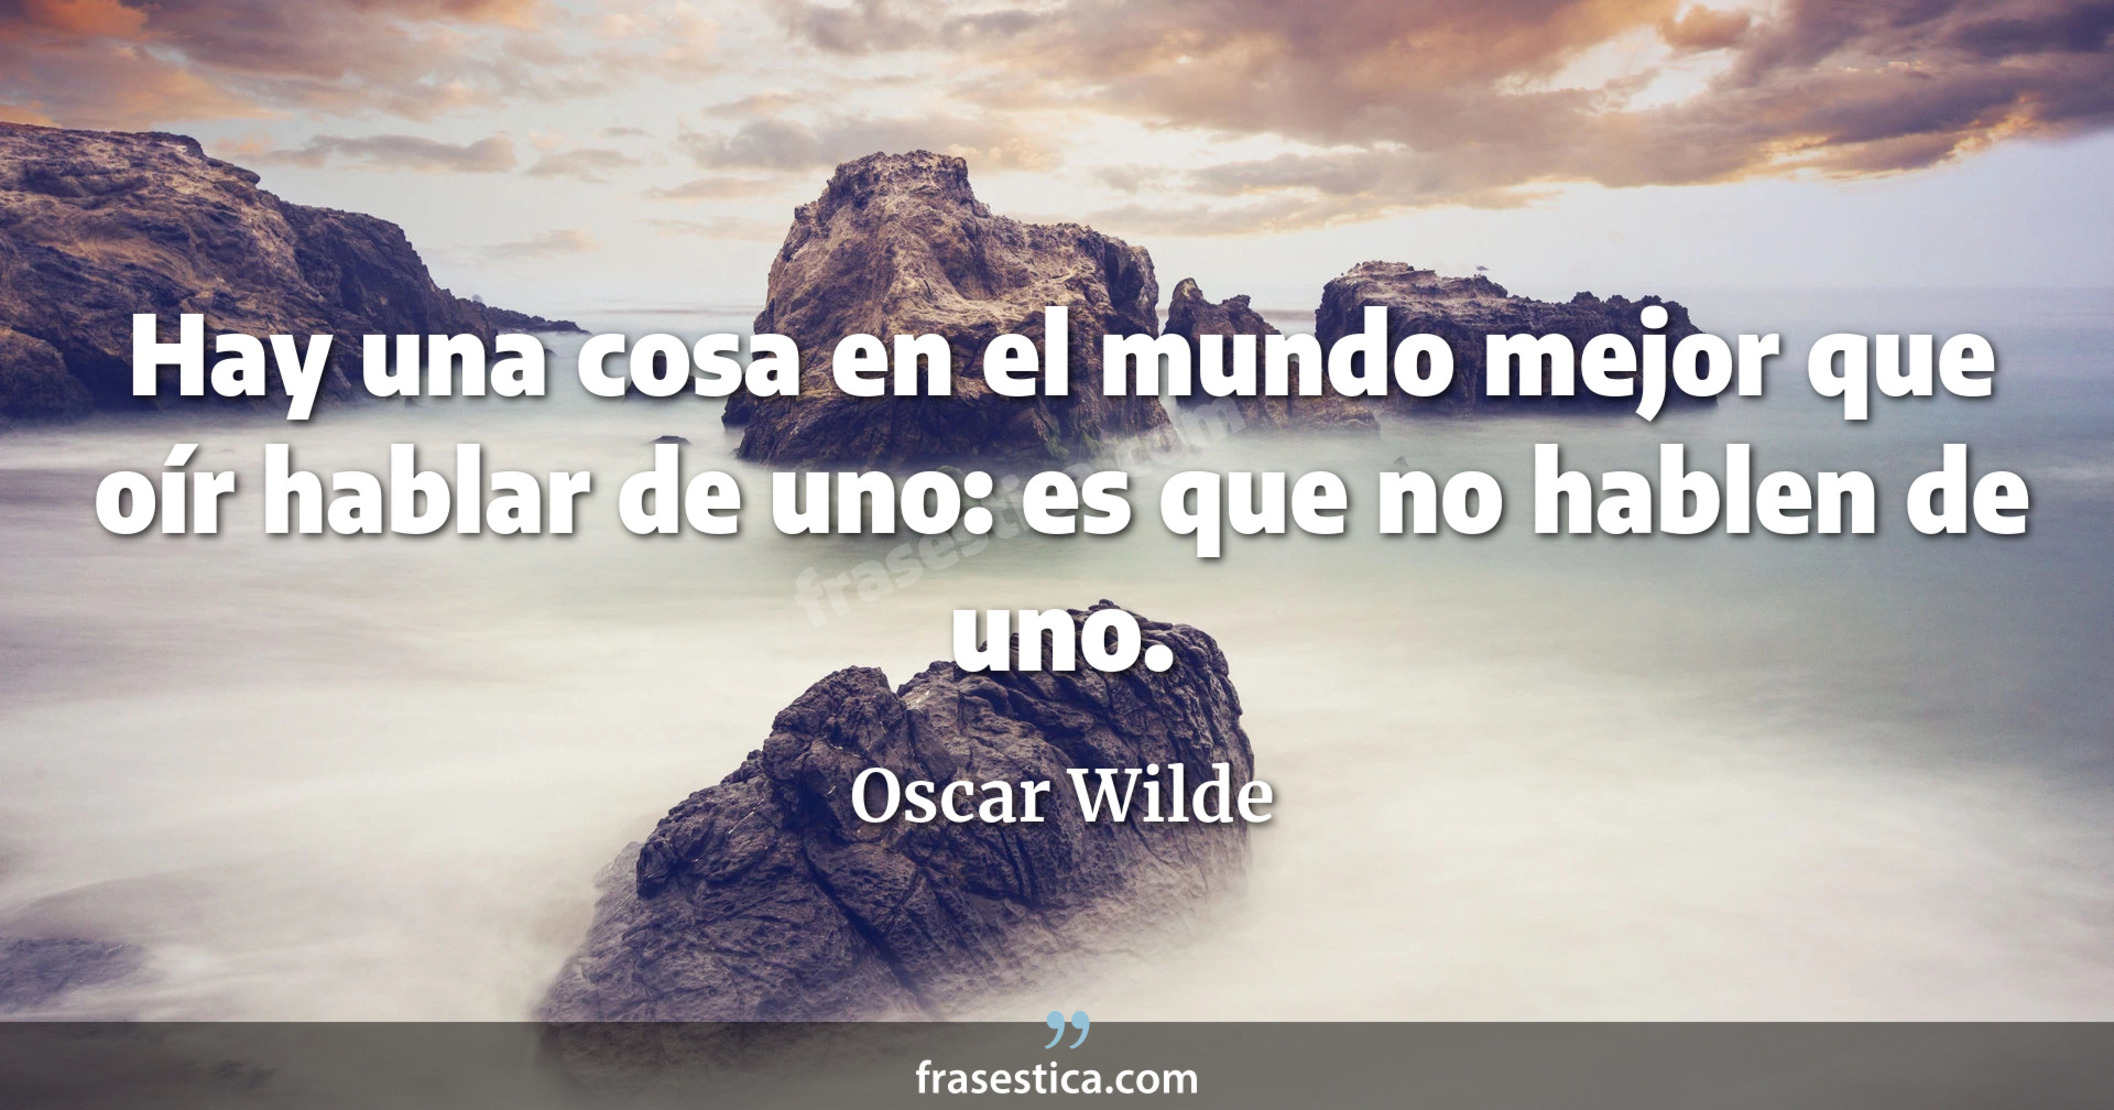 Hay una cosa en el mundo mejor que oír hablar de uno: es que no hablen de uno. - Oscar Wilde